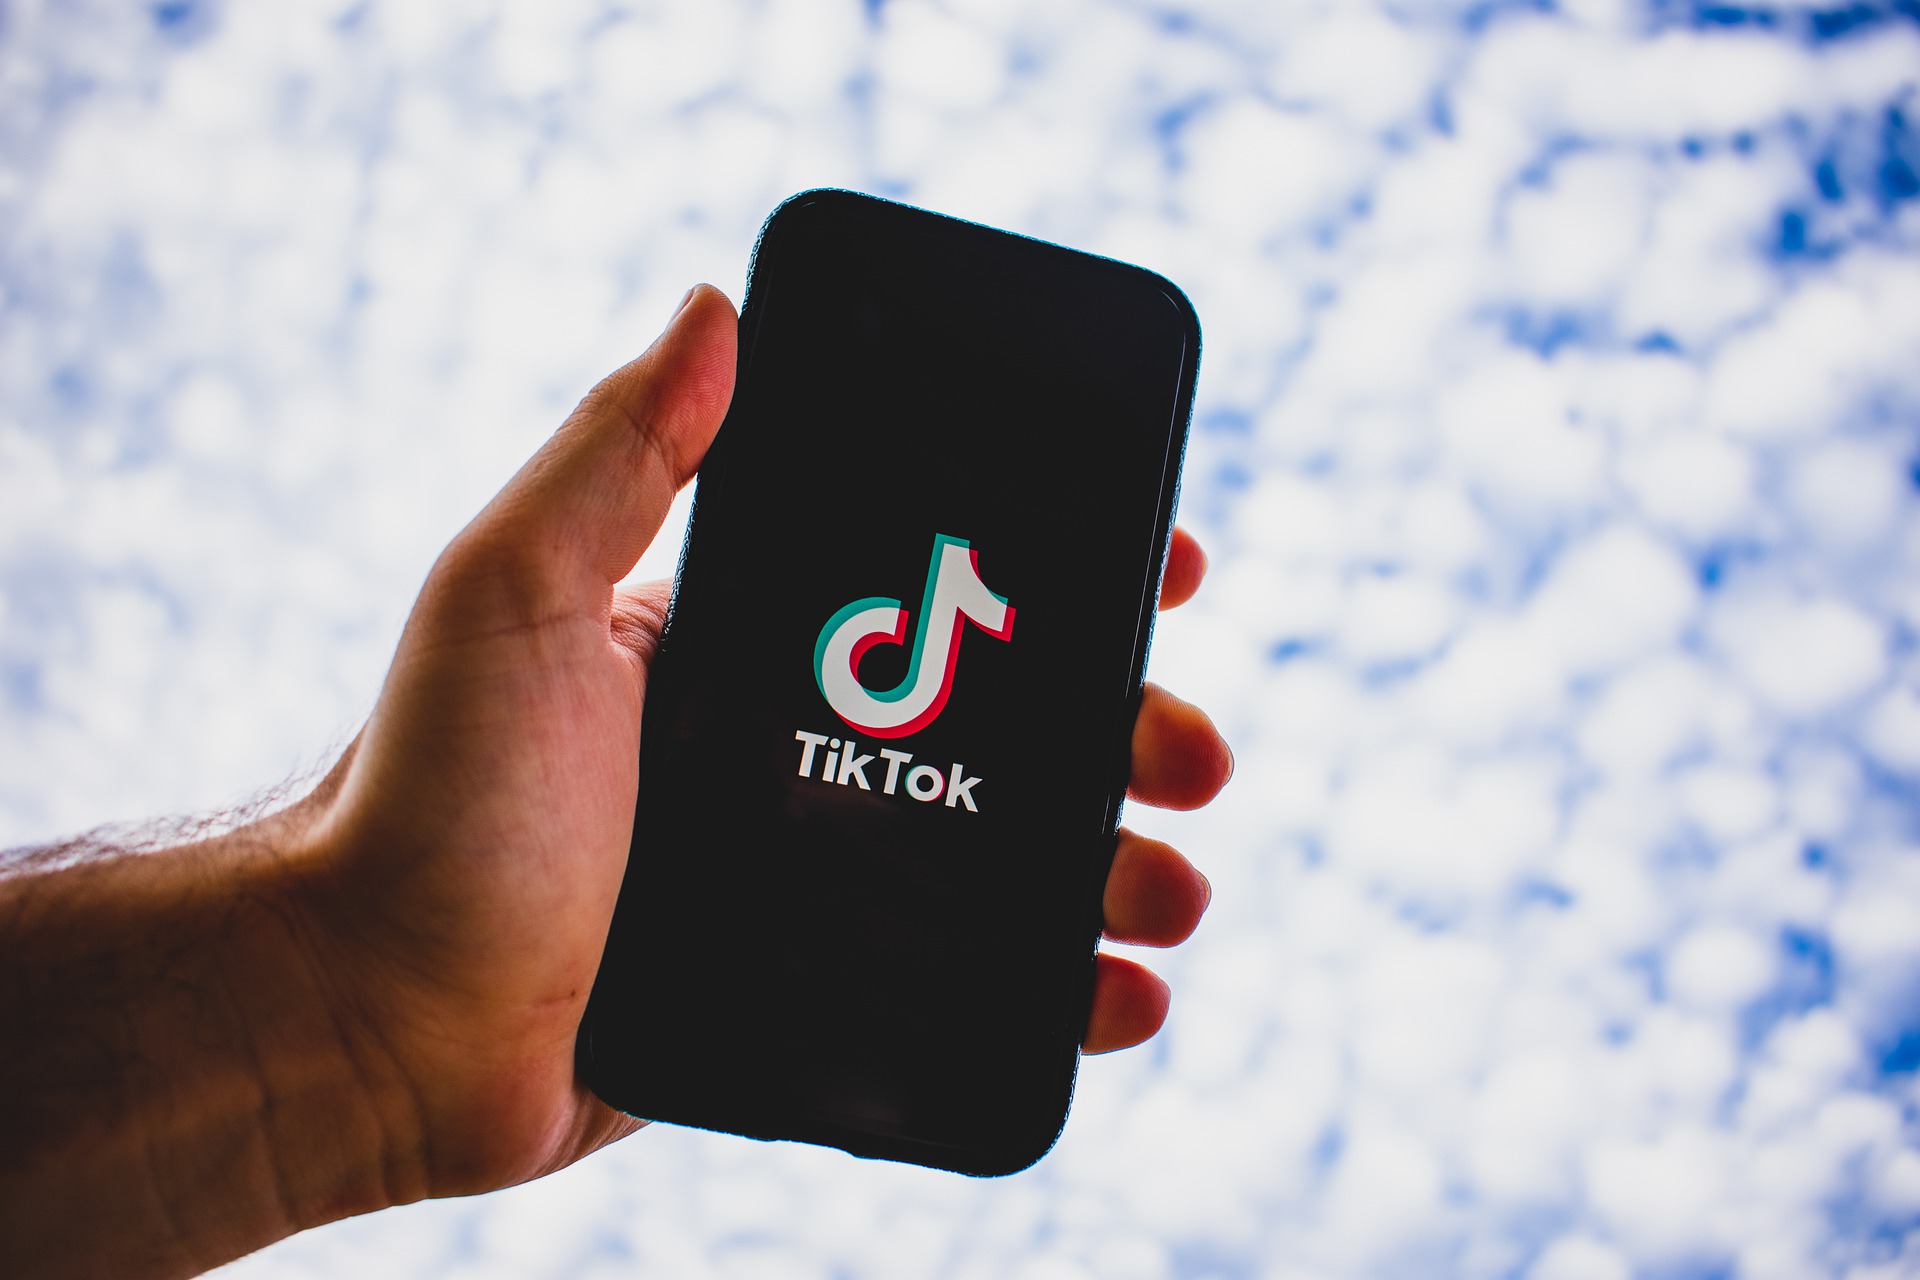 TikTok remporte une première bataille judiciaire contre son interdiction